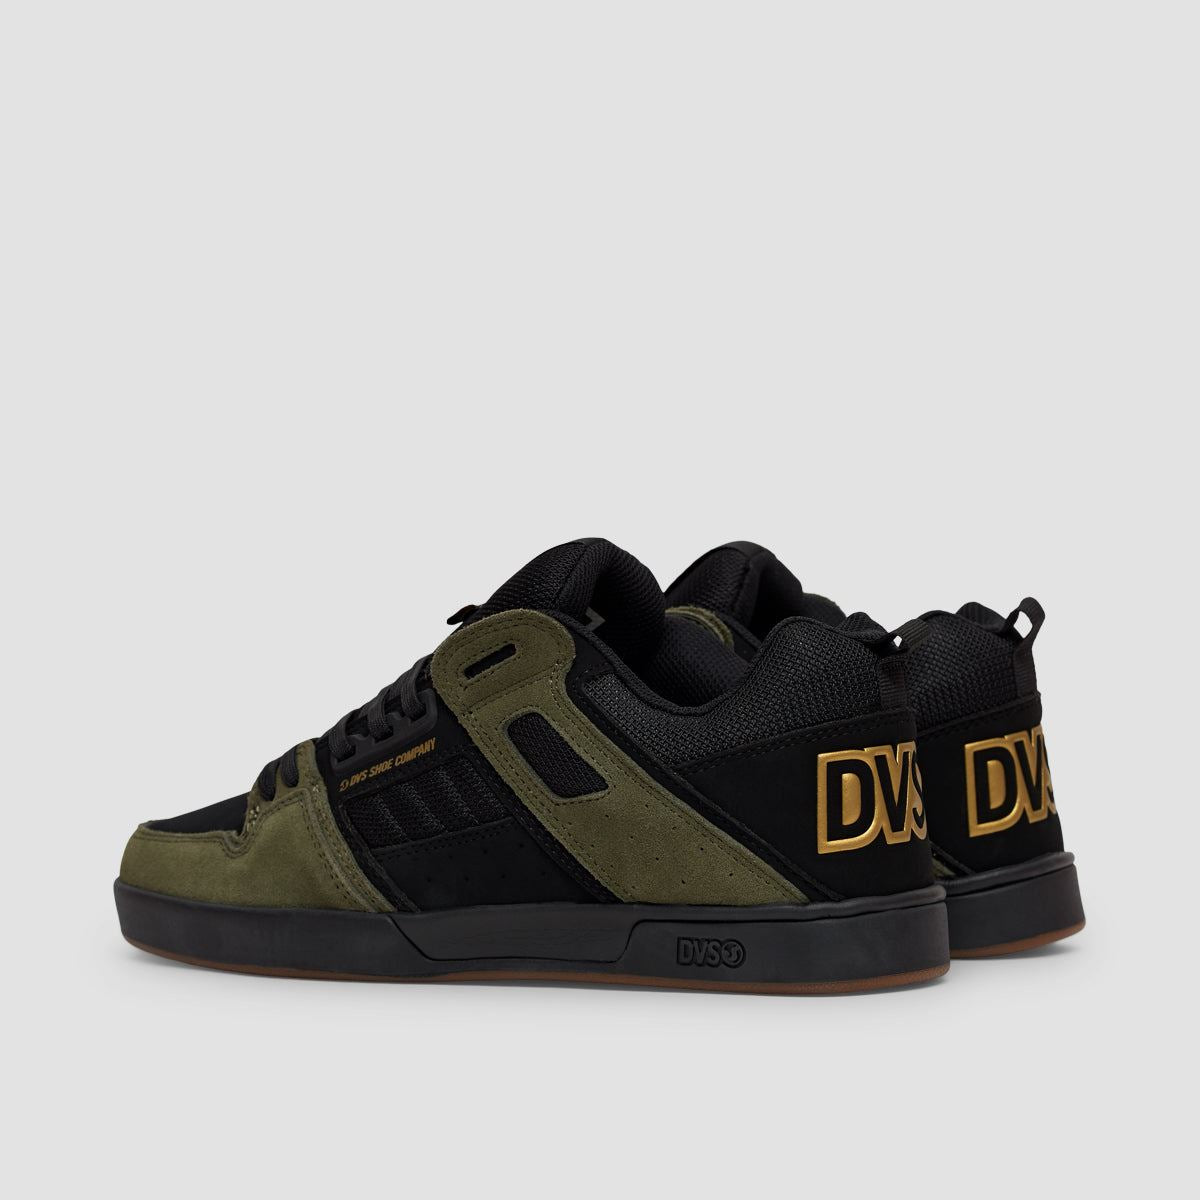 DVS Comanche 2.0+ Shoes - Black/Olive/Gold Nubuck